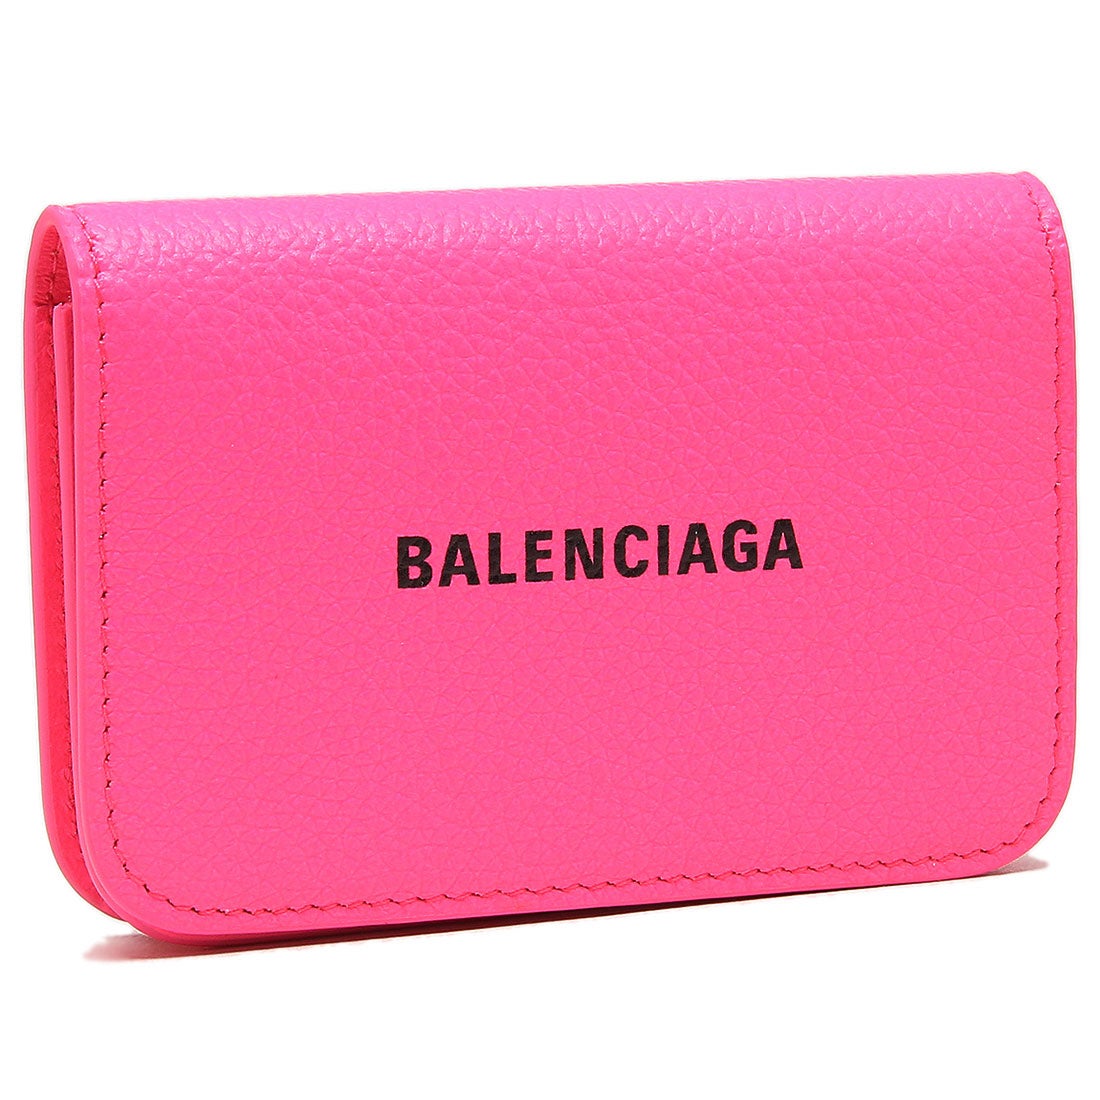 専用 balenciaga カードケース